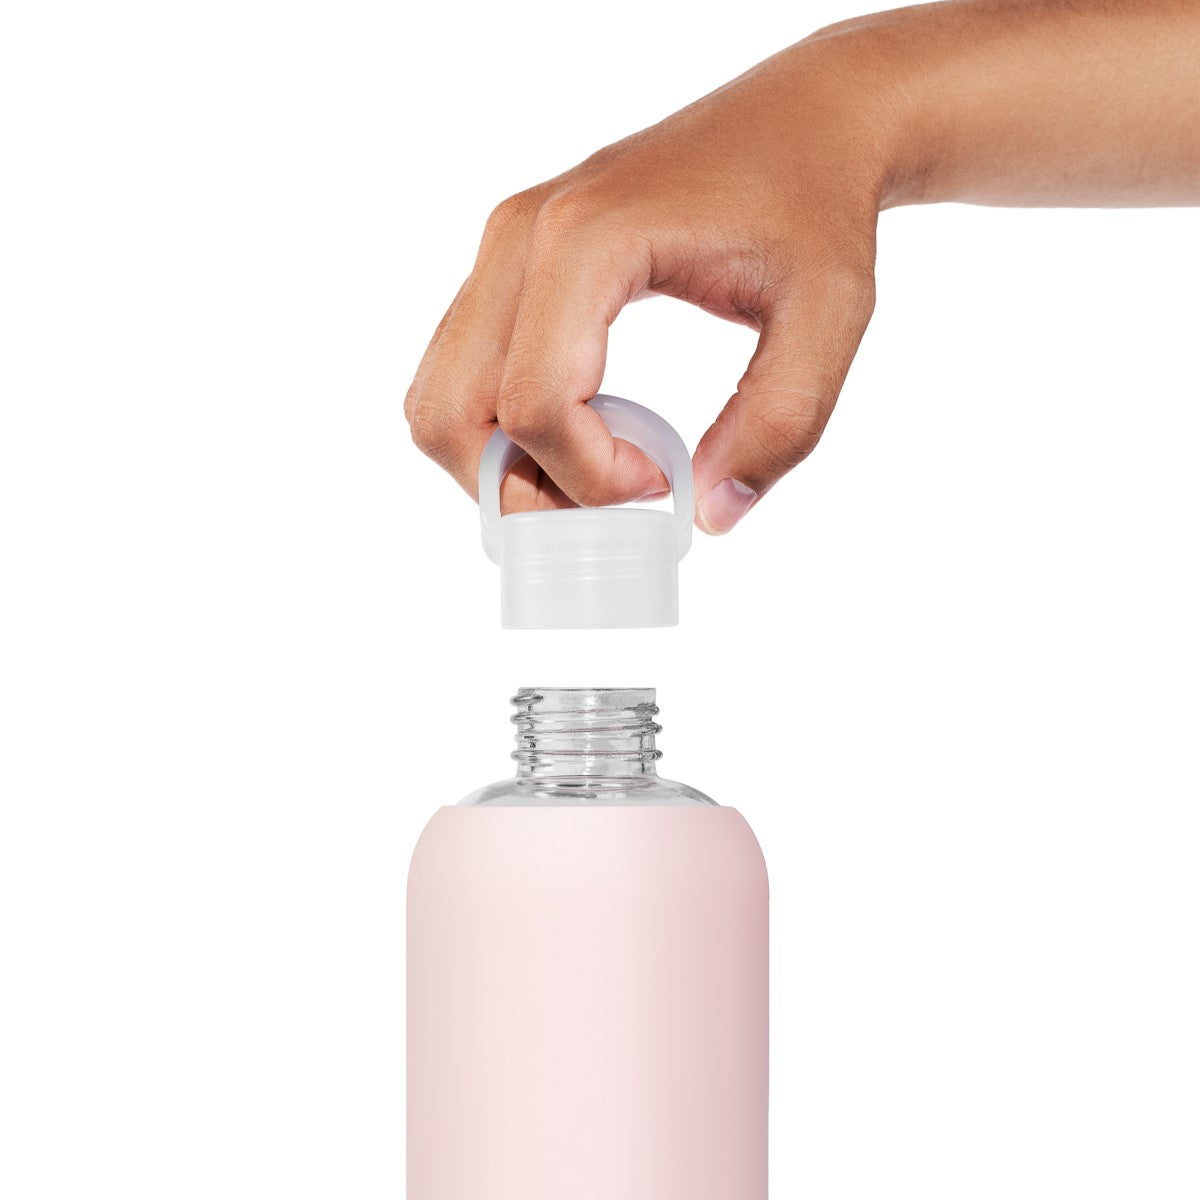 Hidration Glass Water Bottle Bundle - 600ml